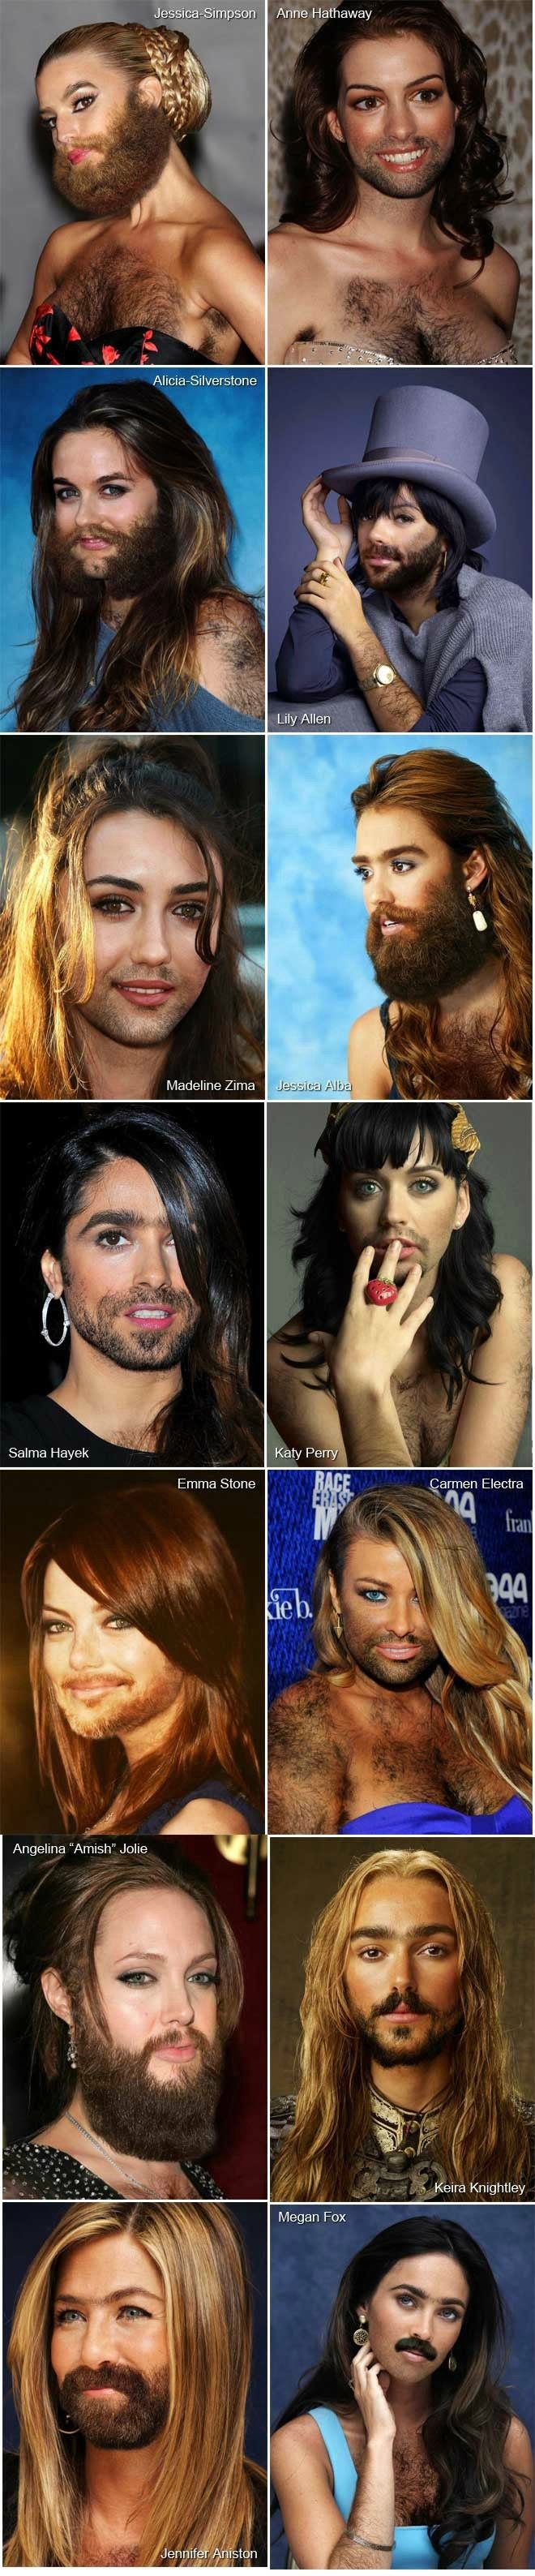 Hairy celebrities.